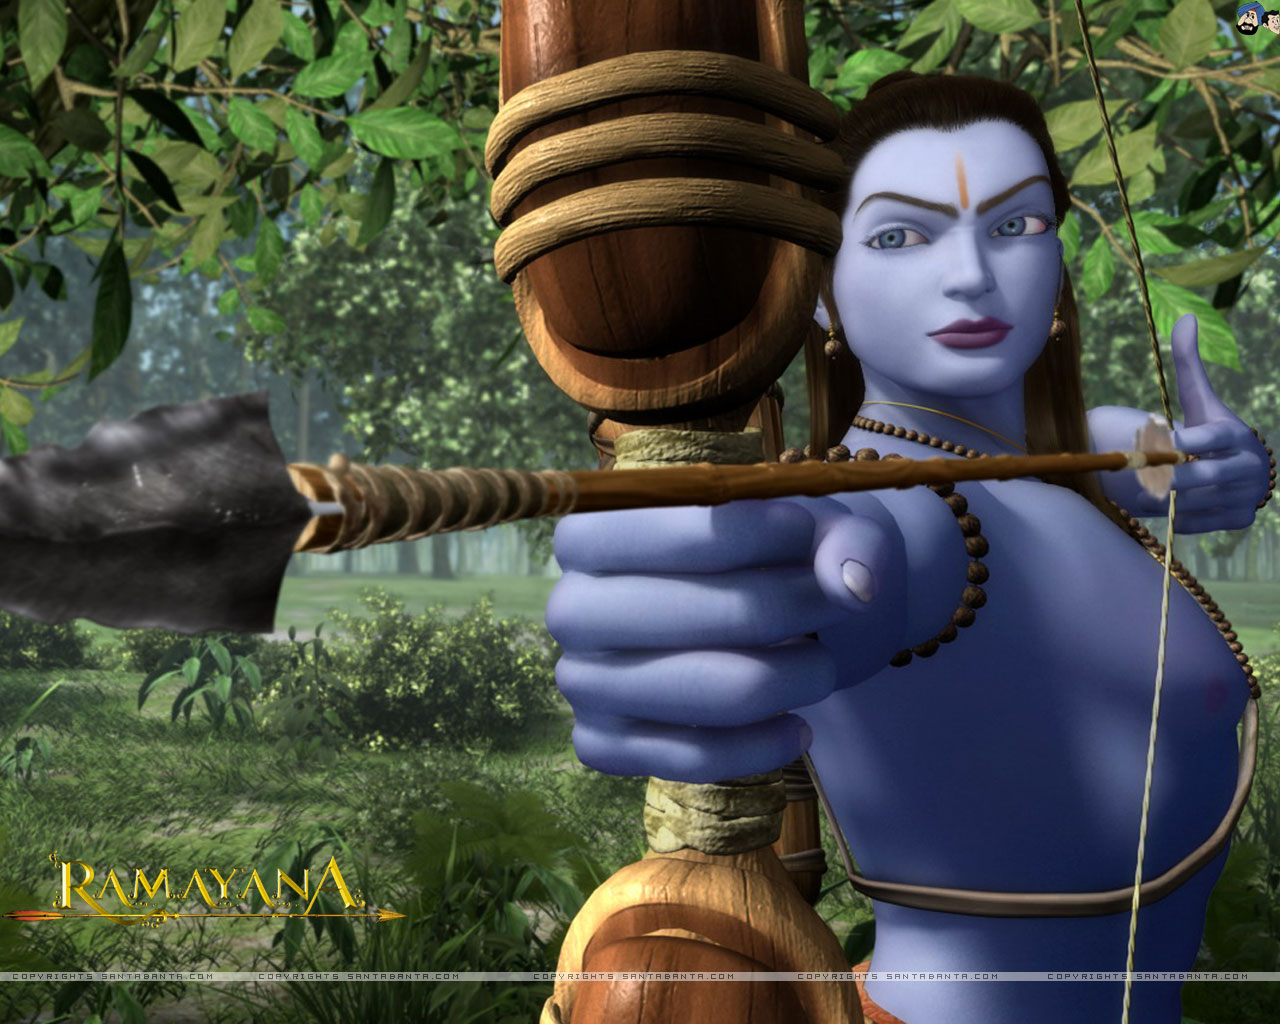 ramayana images fonds d'écran,oeuvre de cg,animation,jeux,arbre,personnage fictif